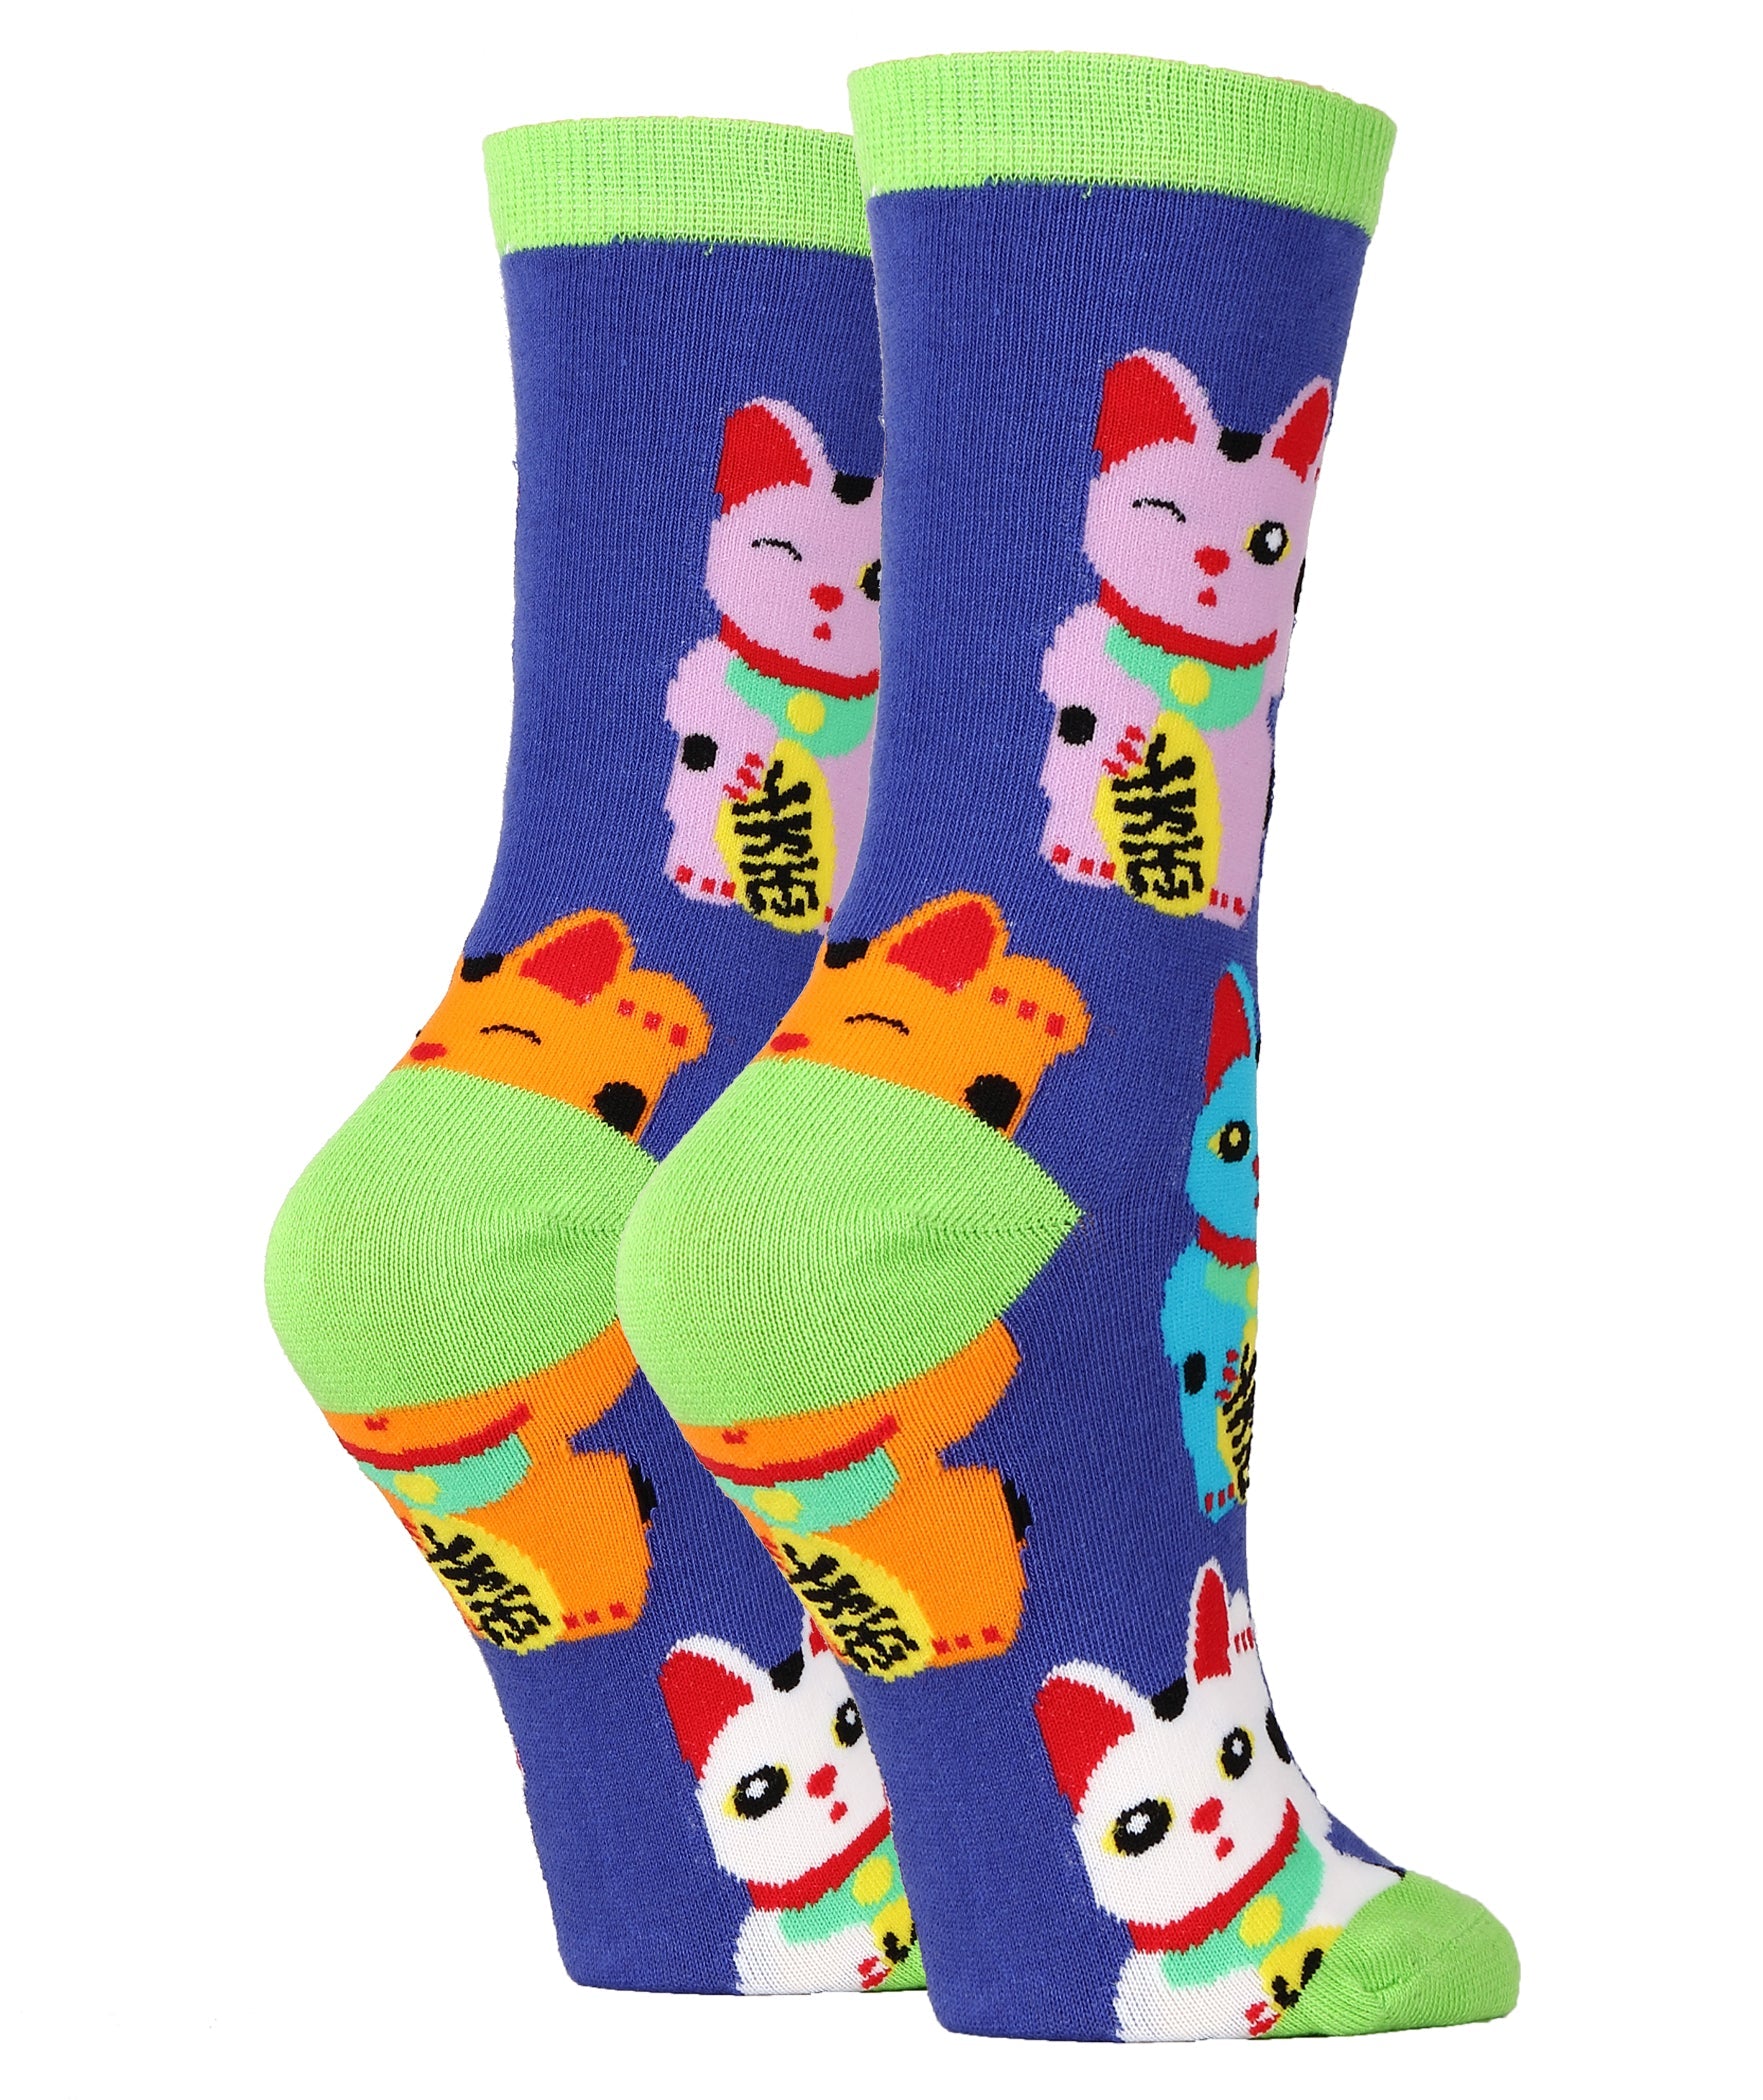 Cat Socks – Good Luck Sock